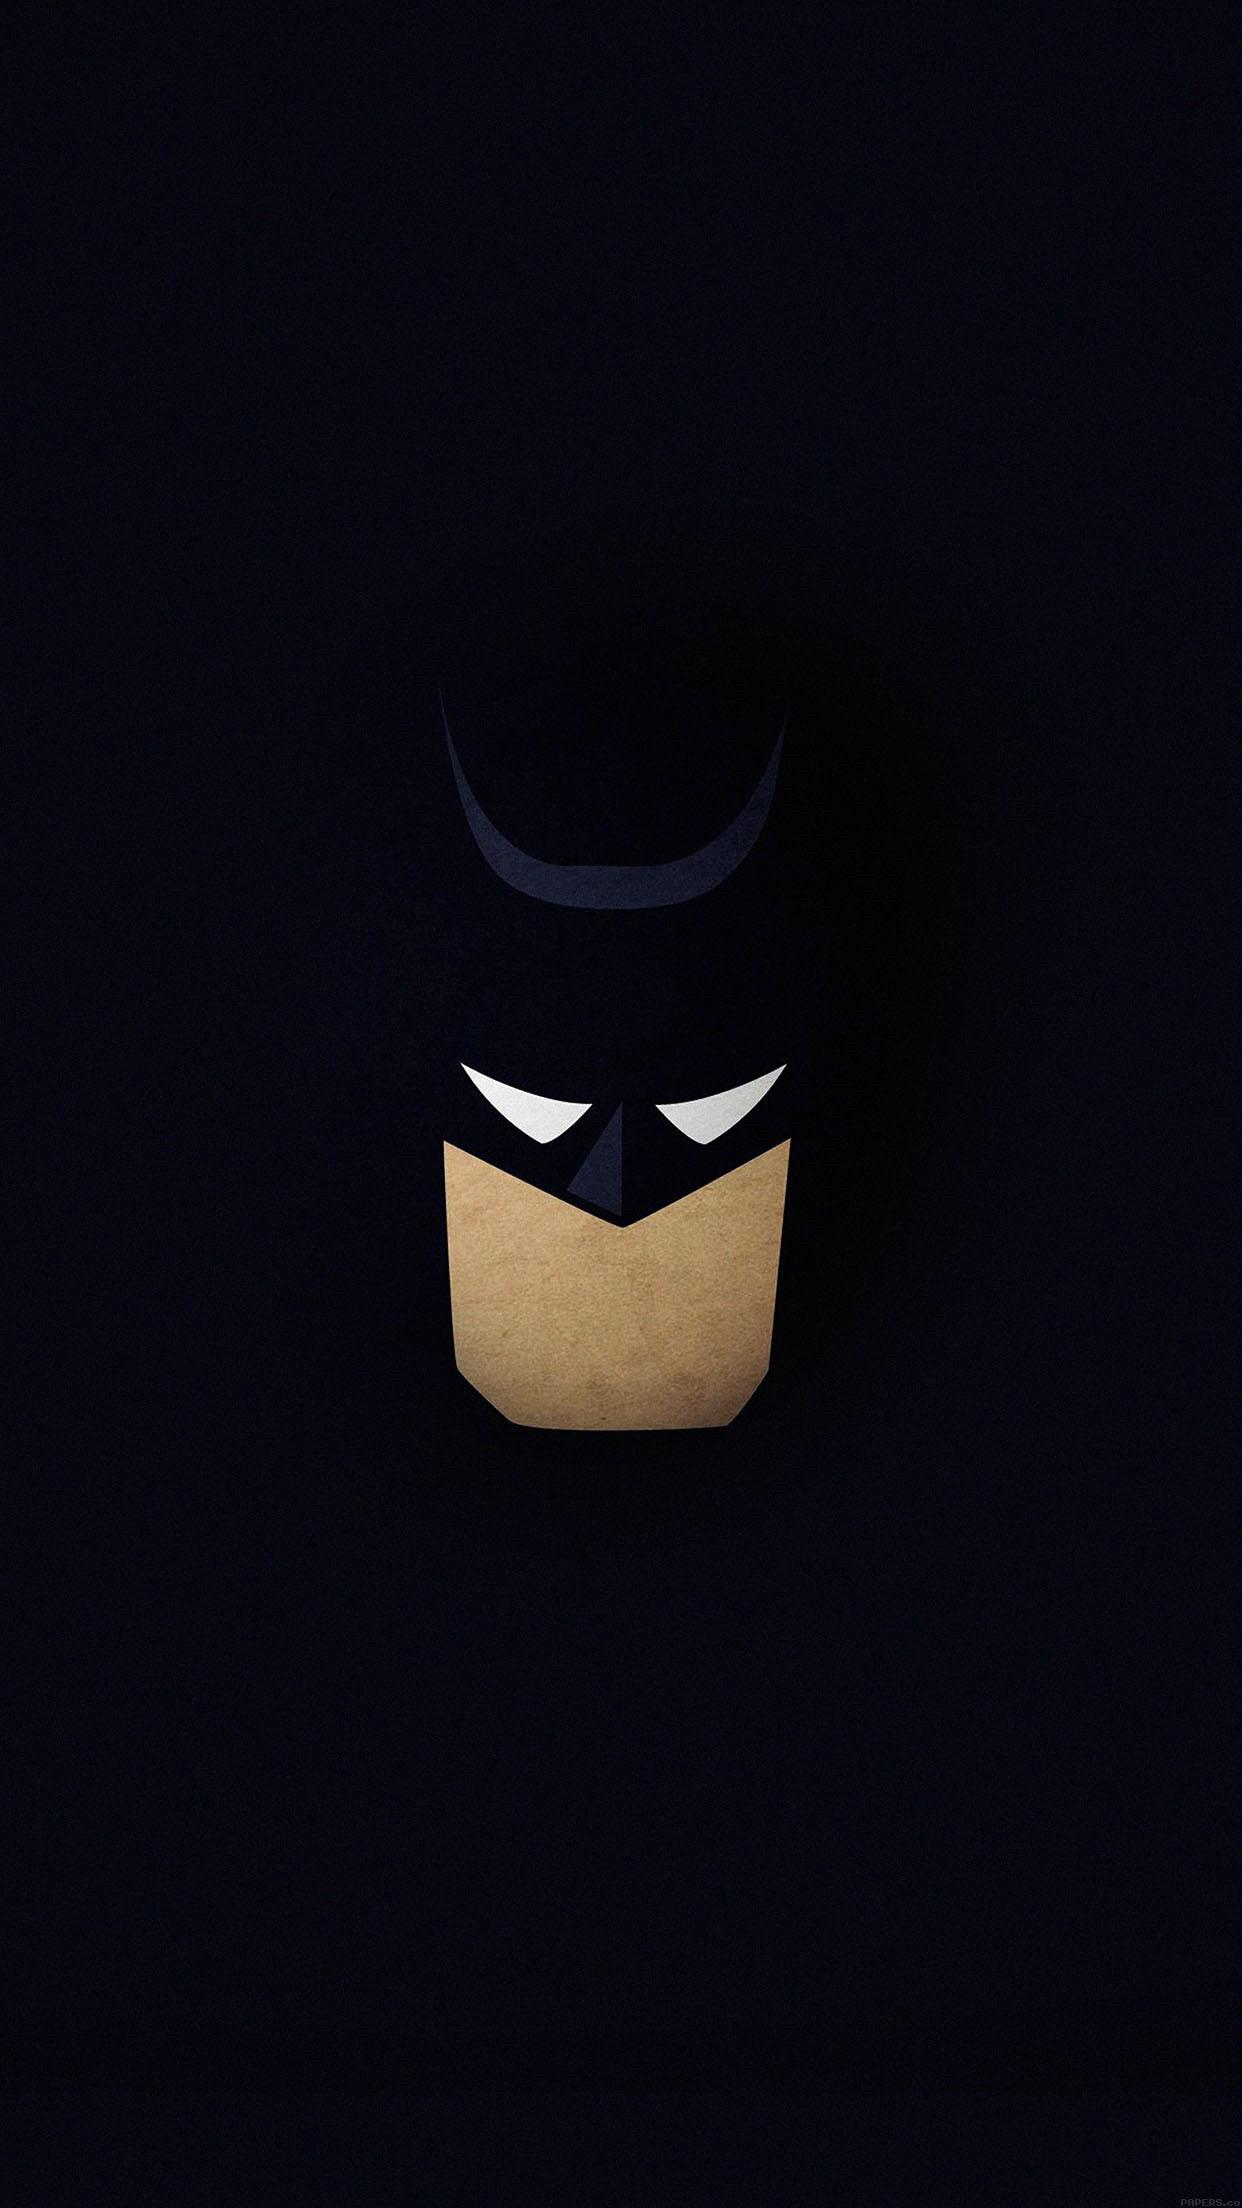 Batman Minimalist Wallpaper